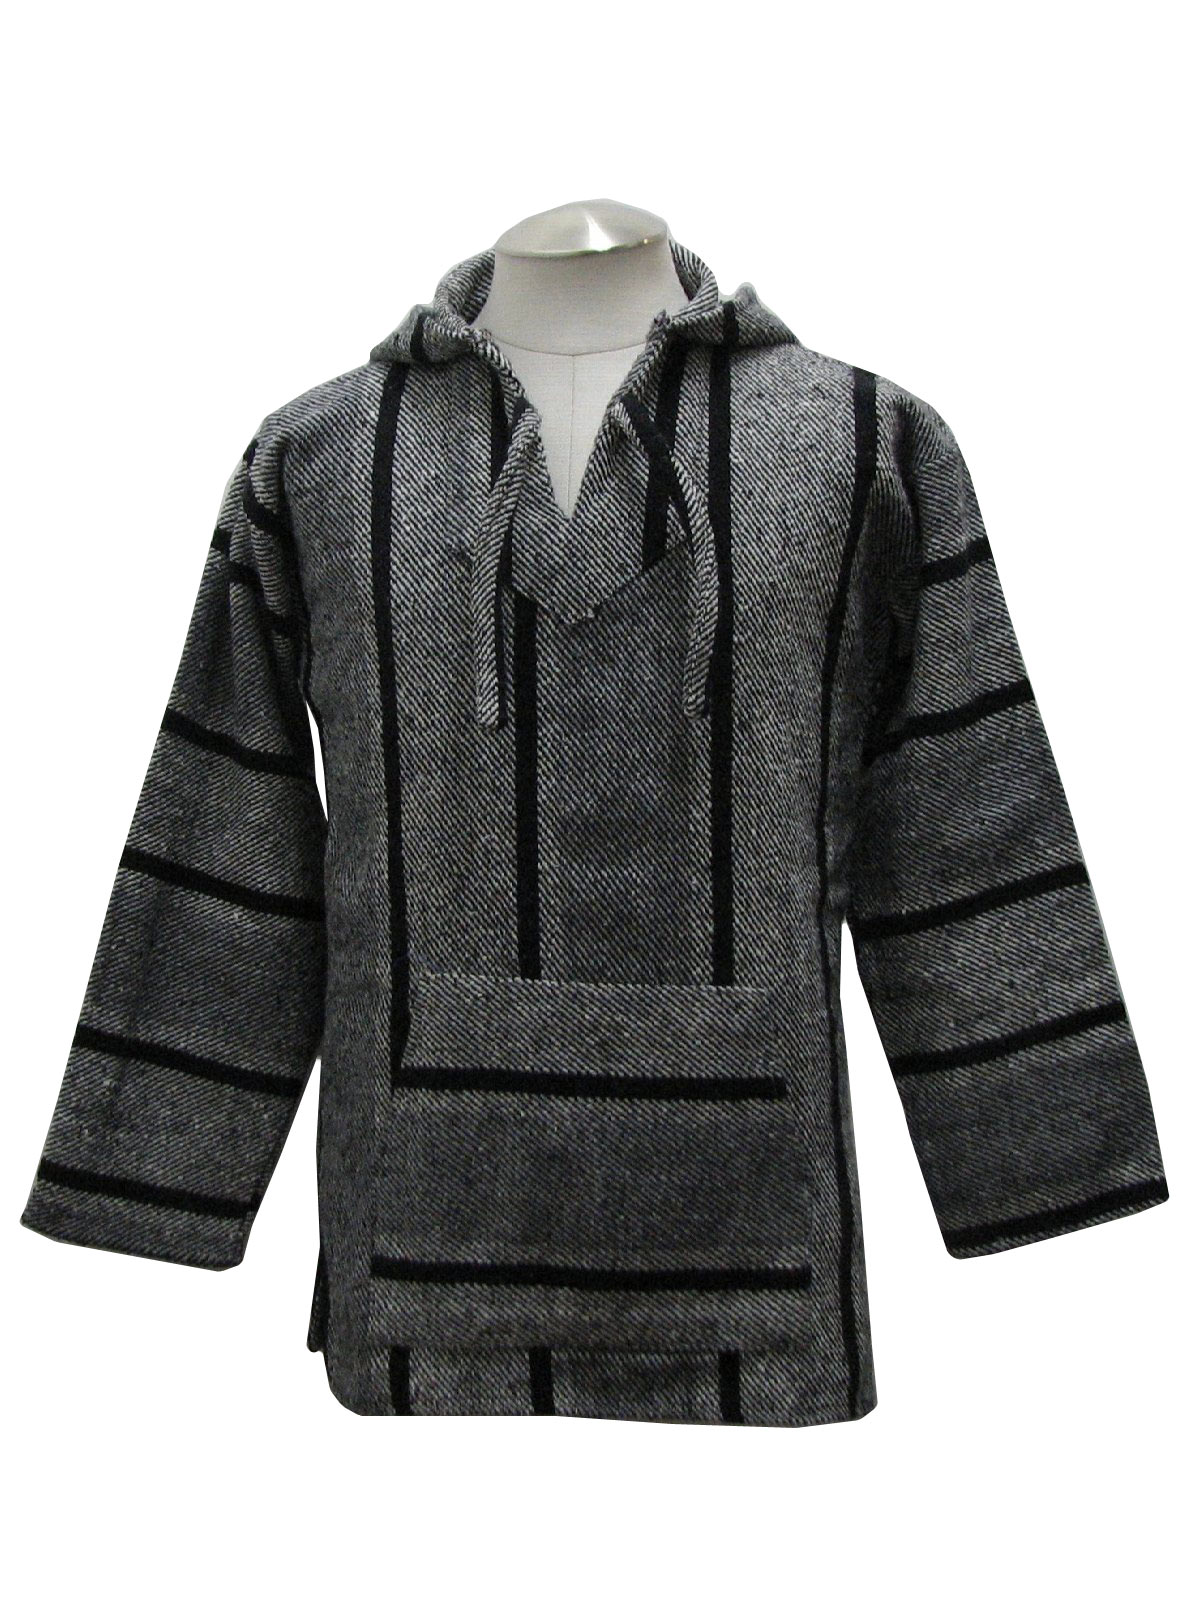 Retro Eighties Jacket: 80s -Textiles- Mens white and black cotton woven ...